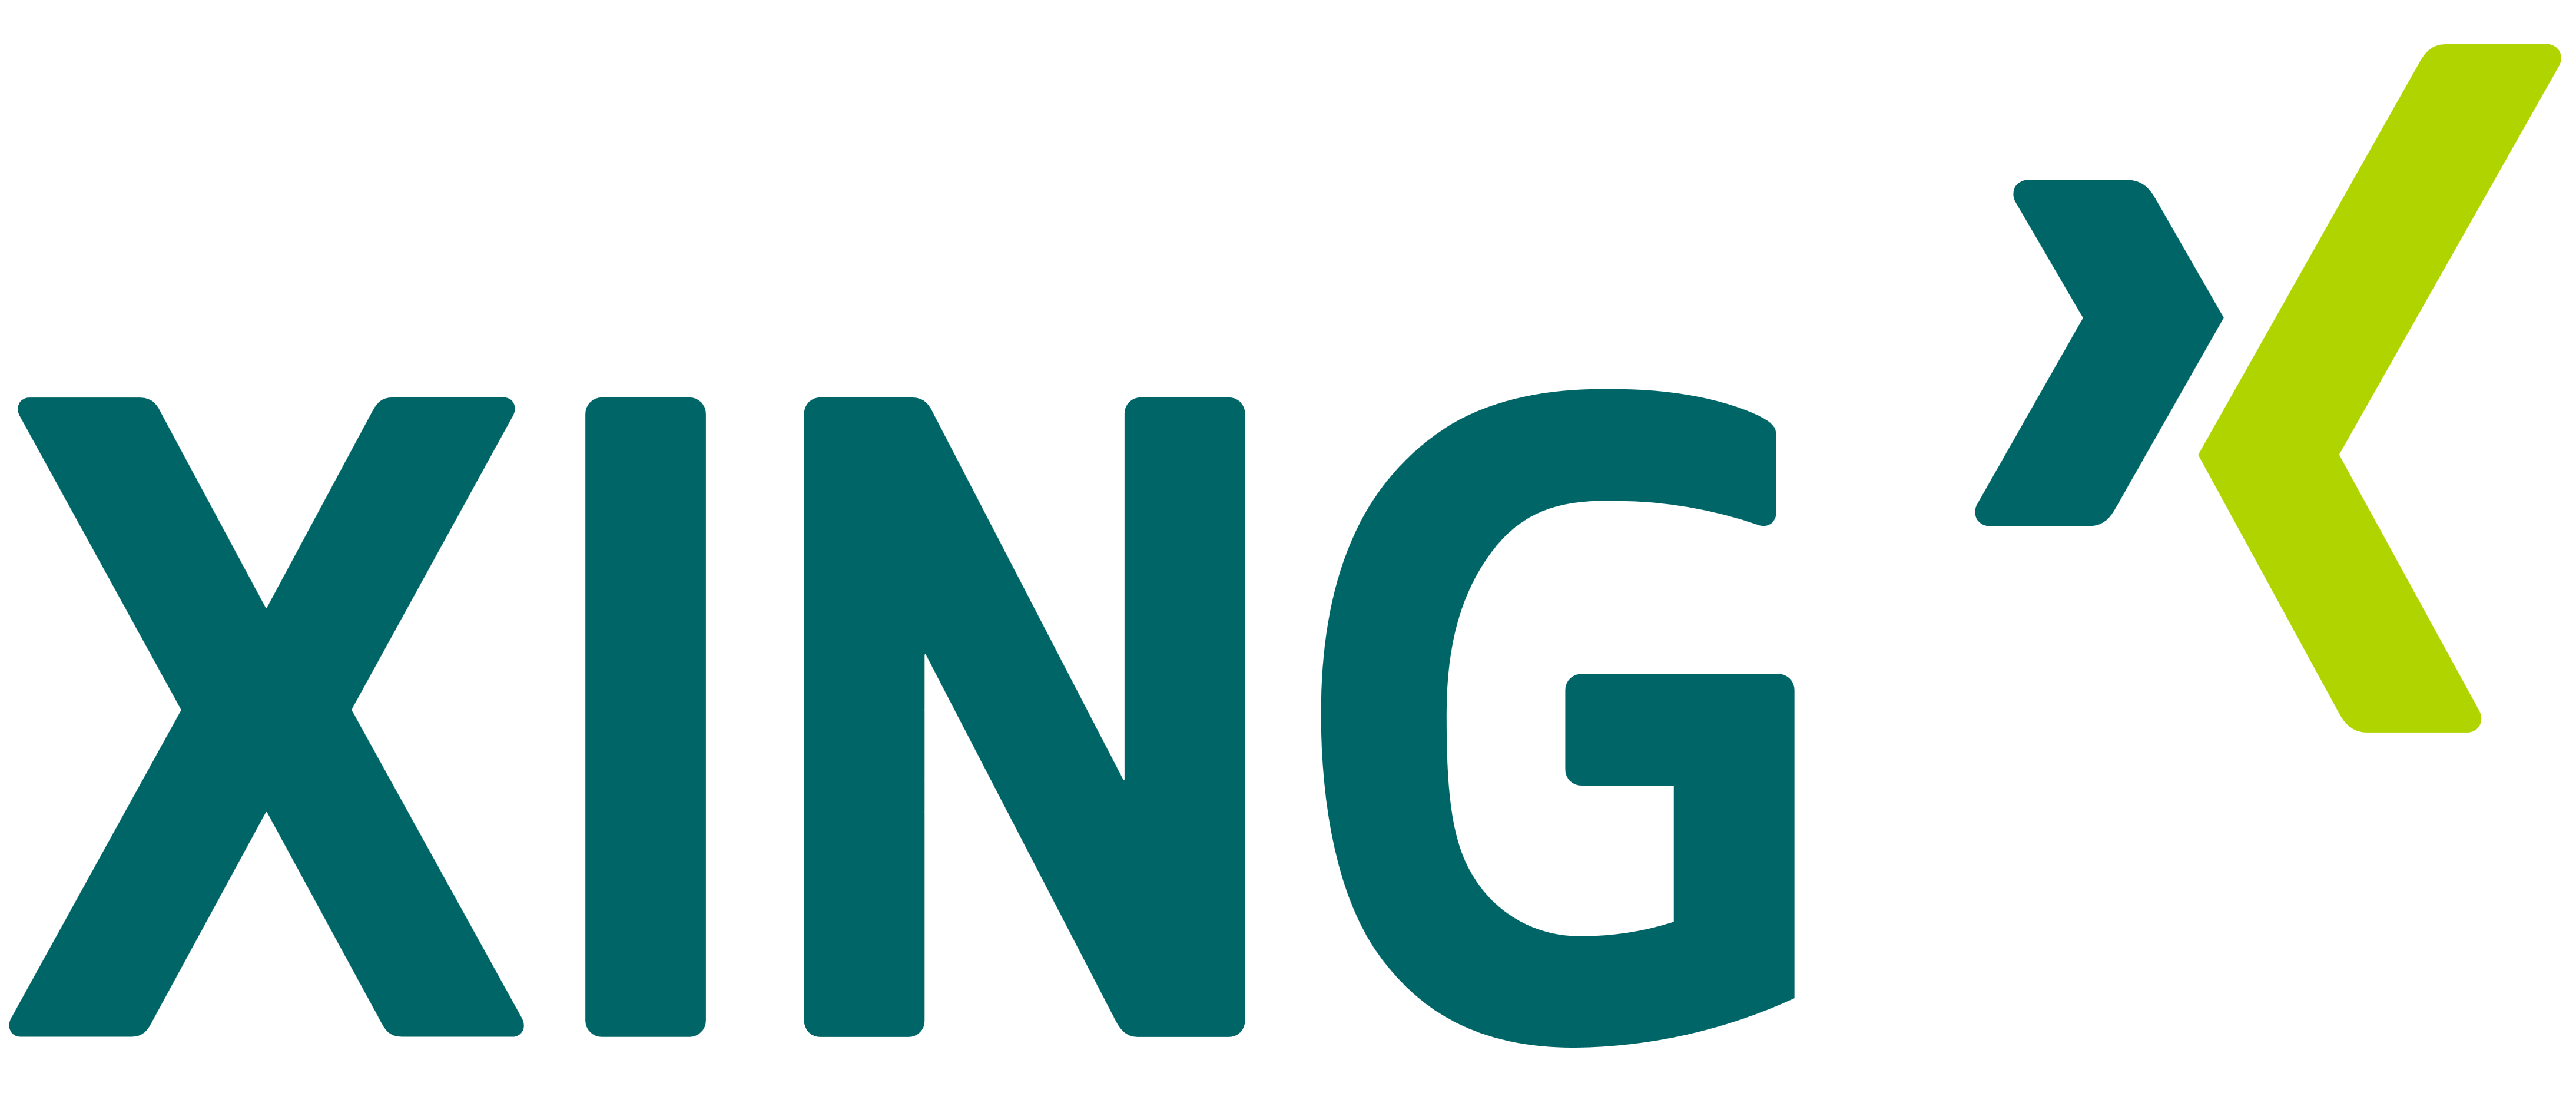 XING logo, logotype